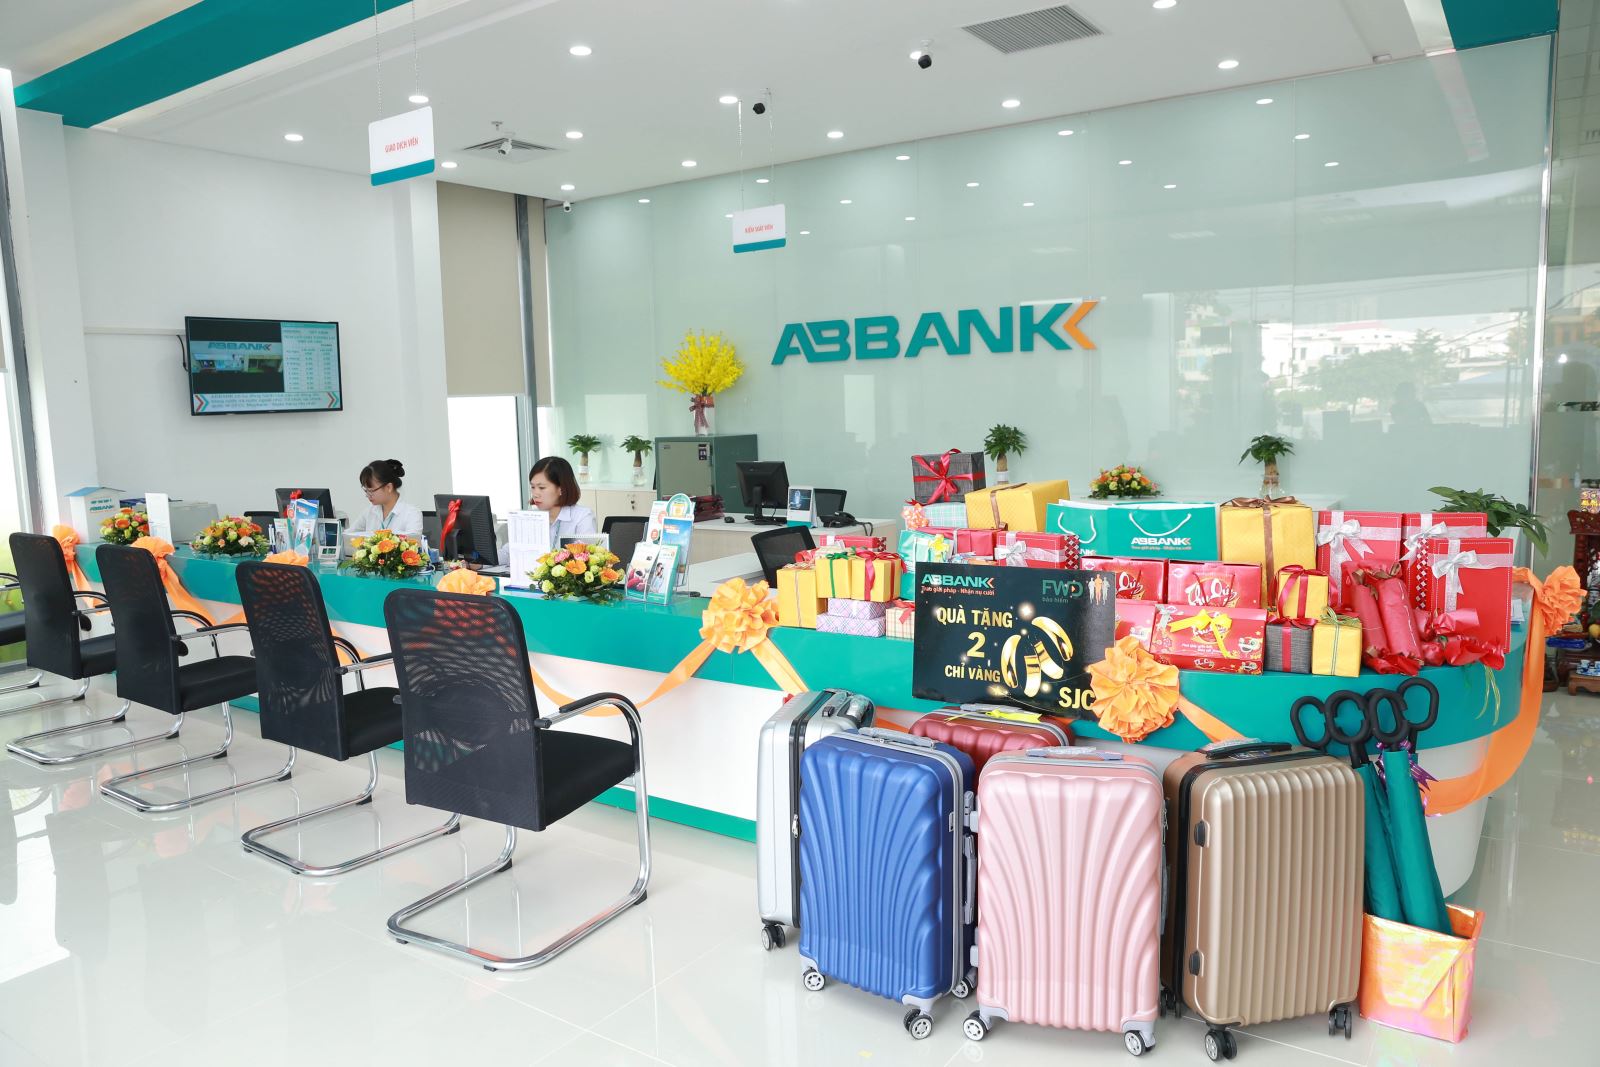 Lương nhân viên ngân hàng ABBank có cao không?